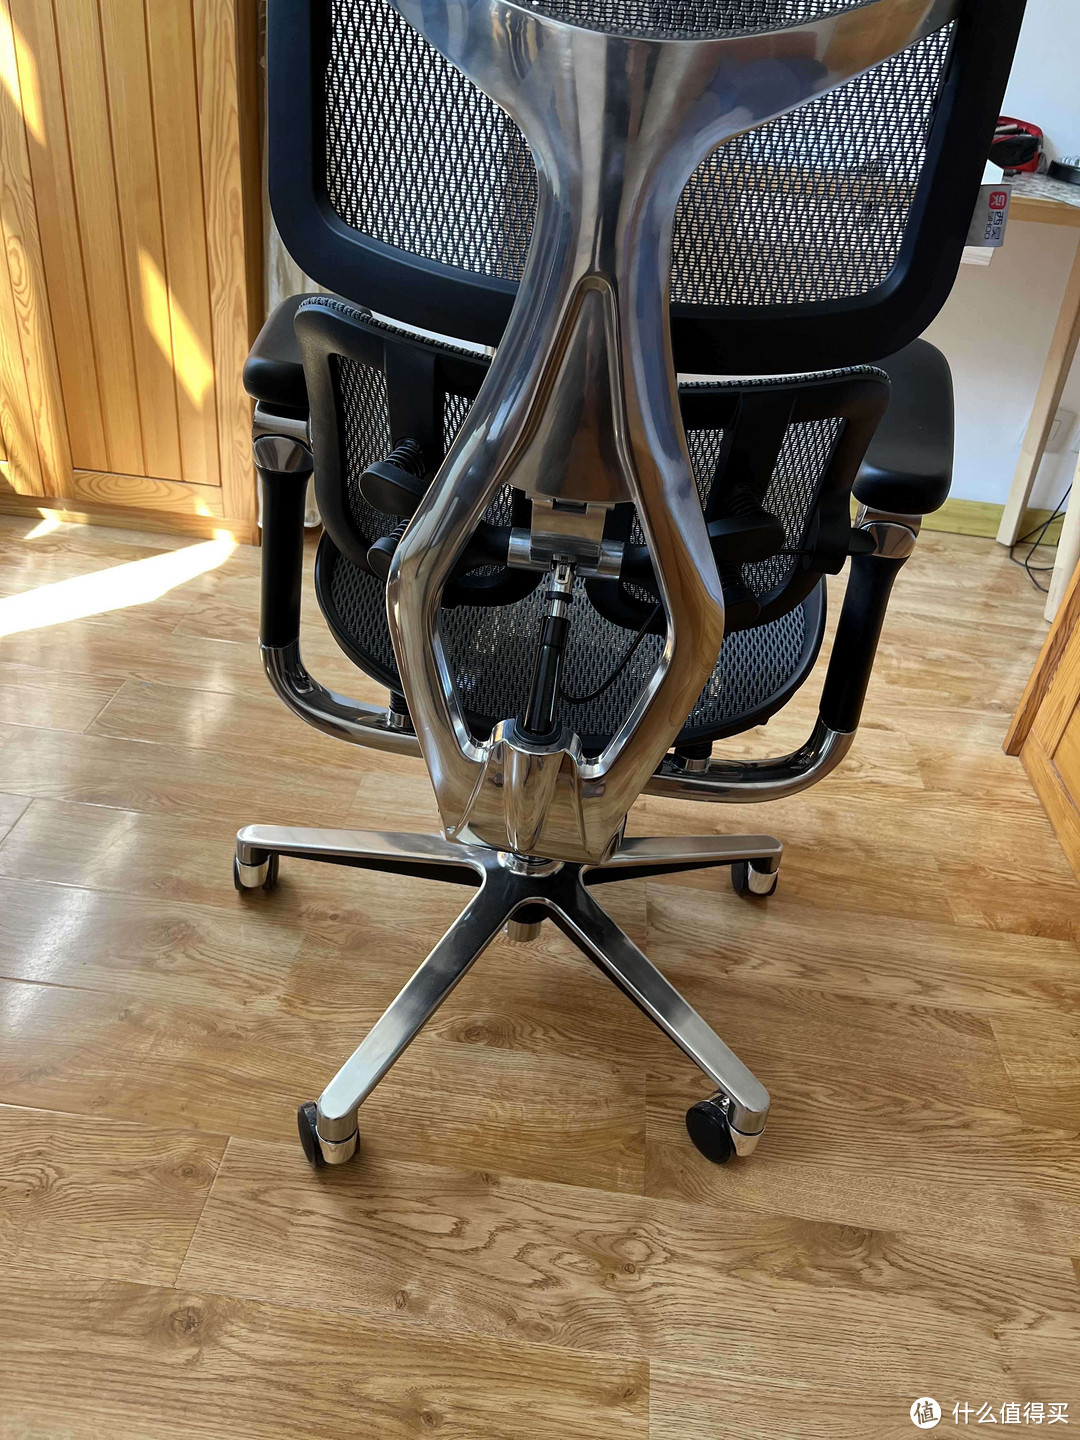 西昊公司推出了一款创新的人体工学椅